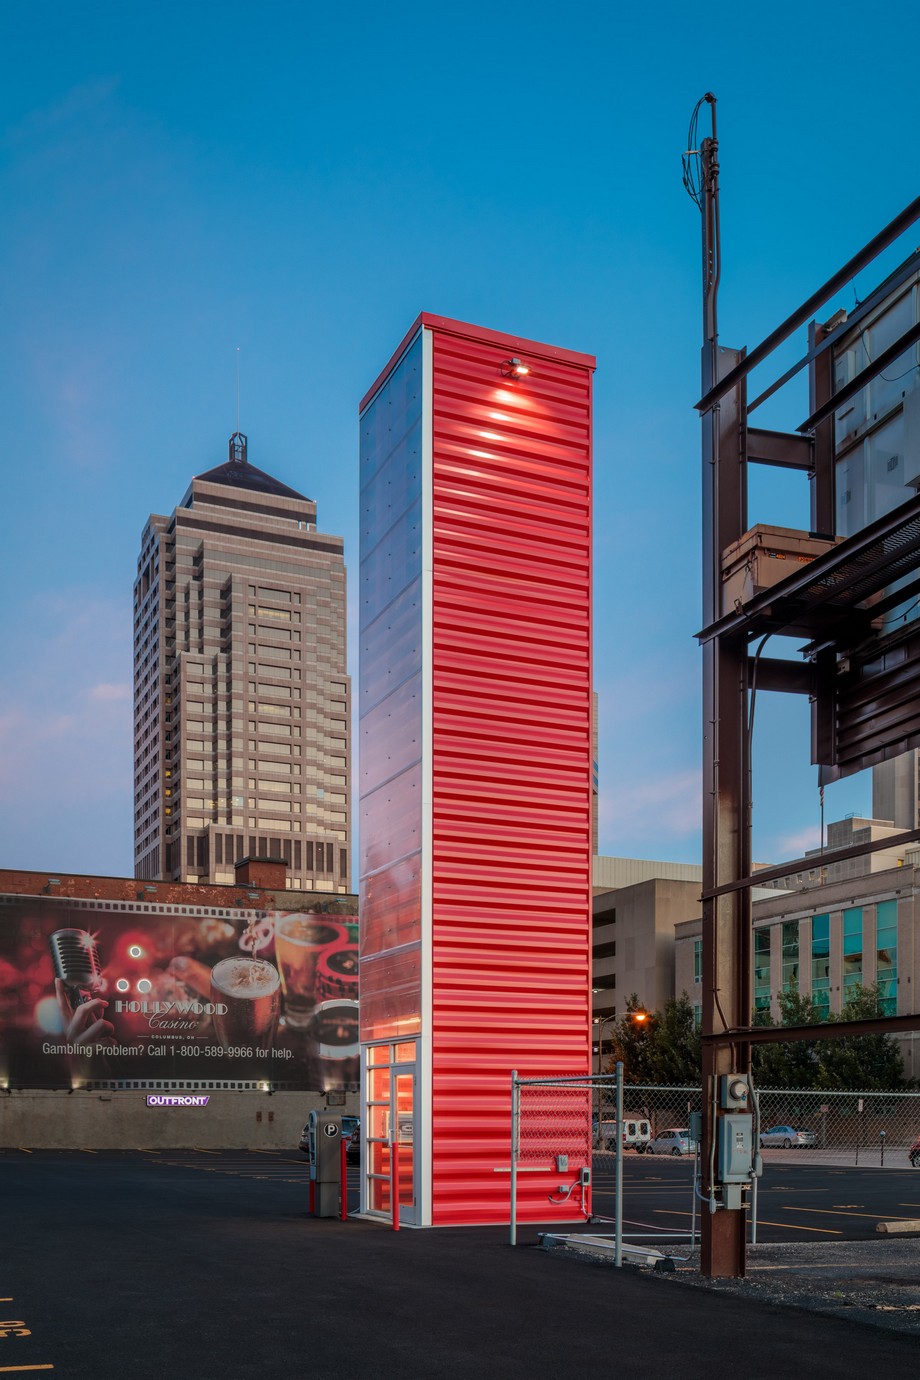 JBAD tái sử dụng container thành bãi đỗ xe thông minh hiện đại > Một mặt của tòa tháp được làm từ kính trong suốt, 3 mặt còn lại là container sơn đỏ